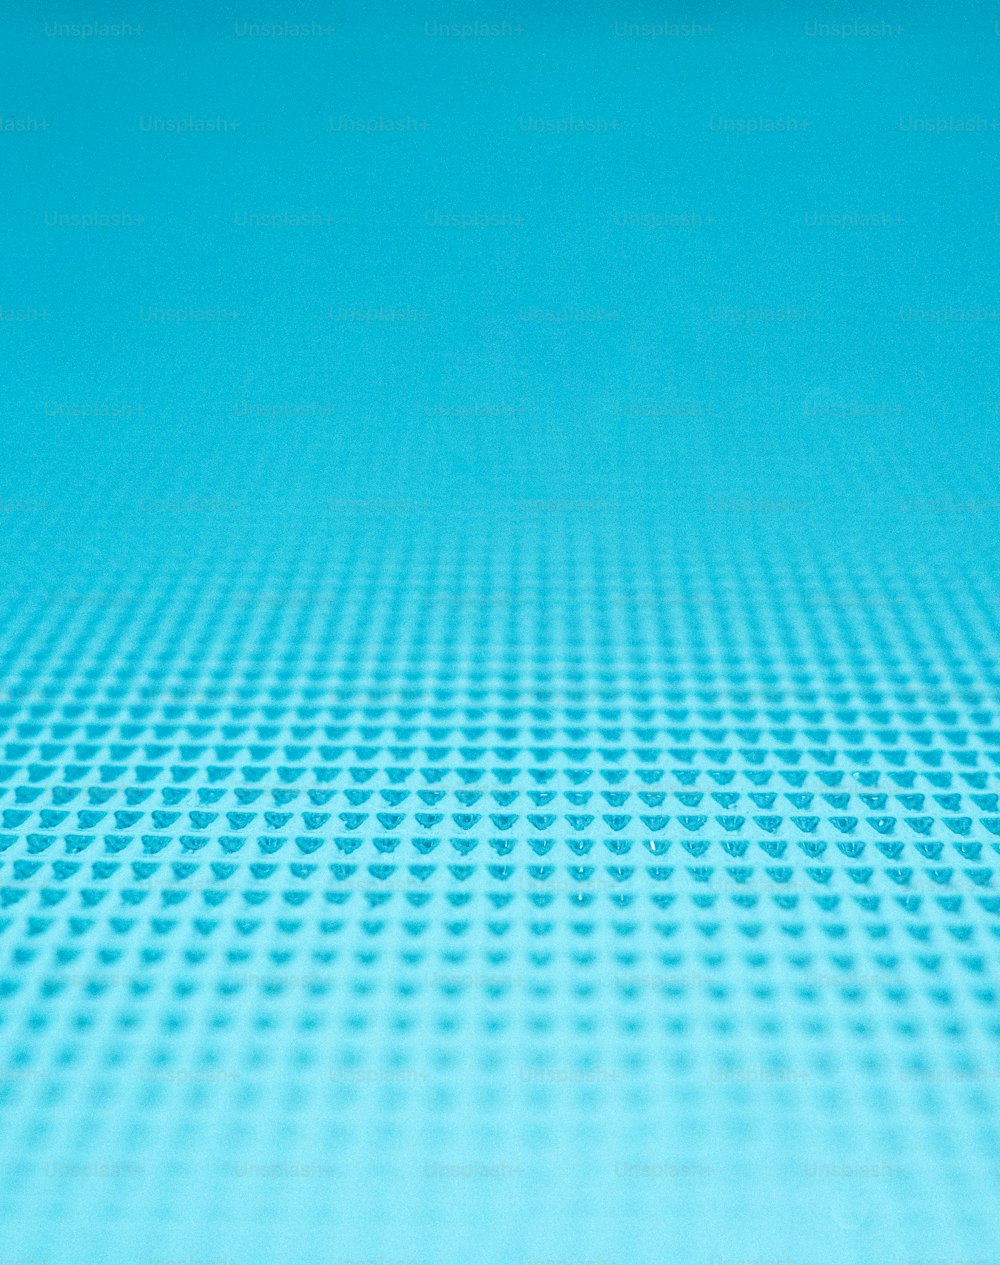 um close up de uma superfície azul com pequenos círculos